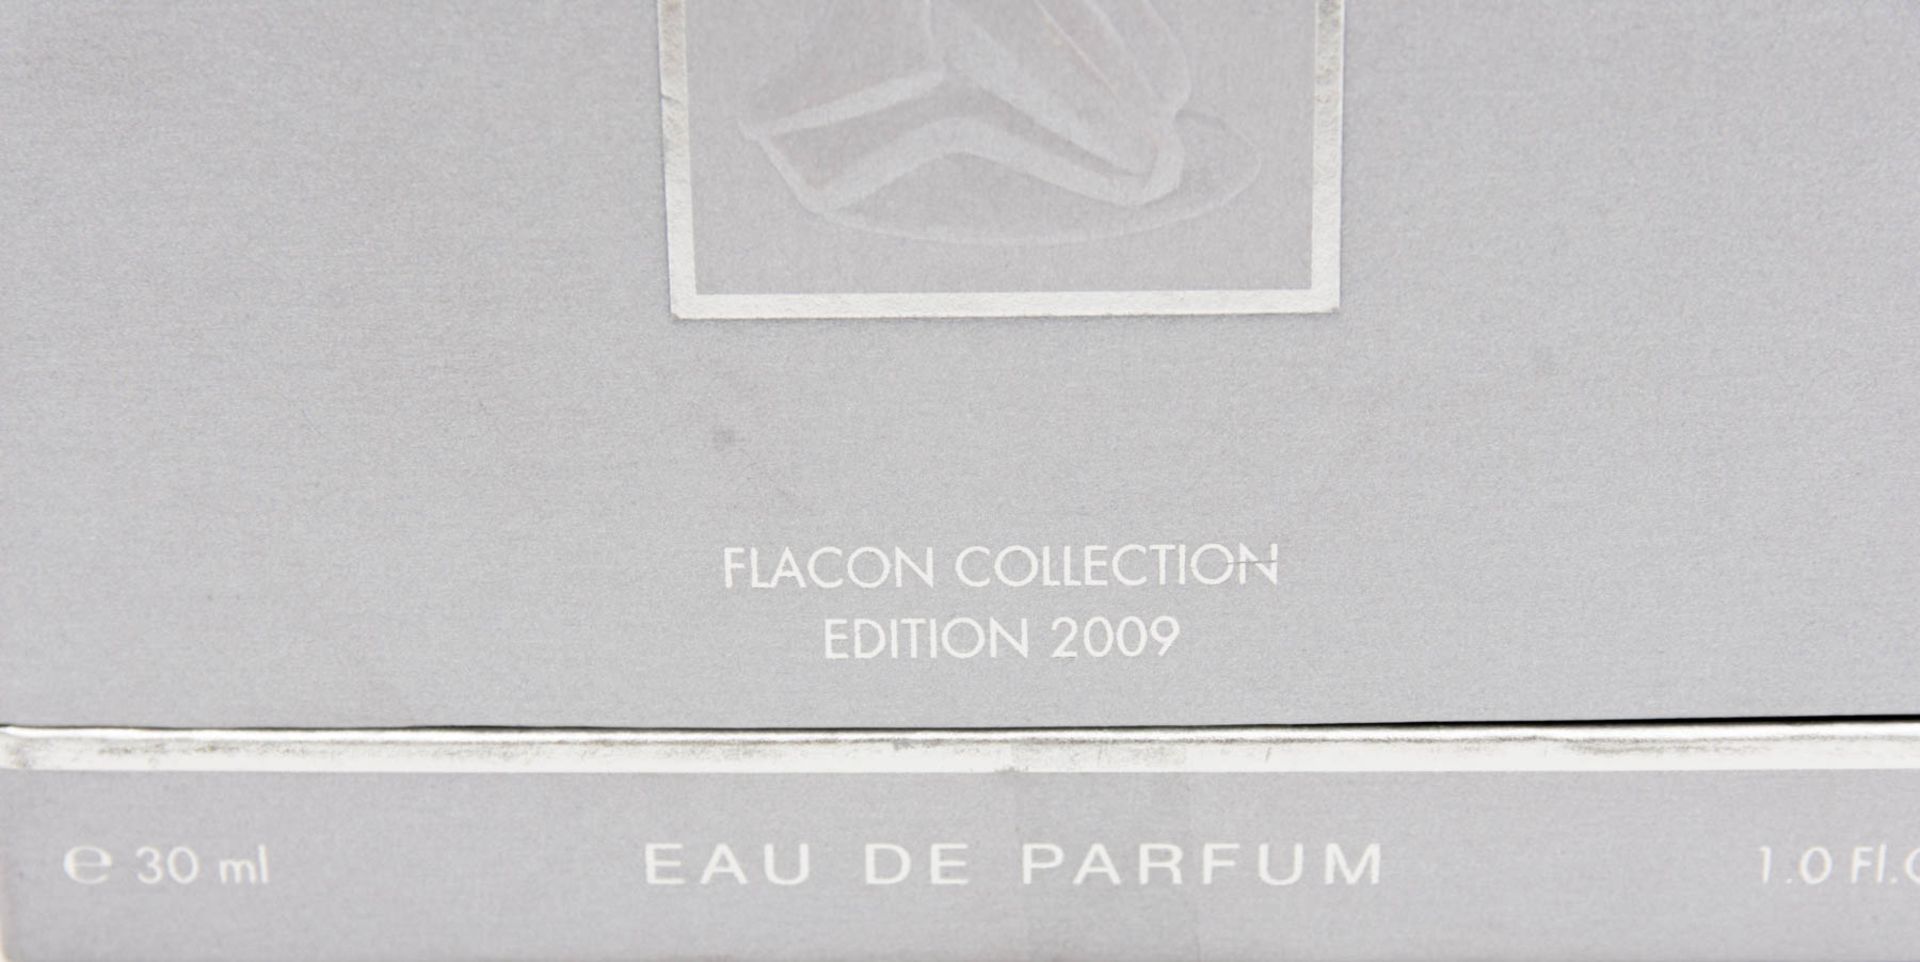 Lalique pour Homme Cristal - Athletes Edition Limitée 2009.Flacon collection.Limited collection im - Bild 4 aus 4